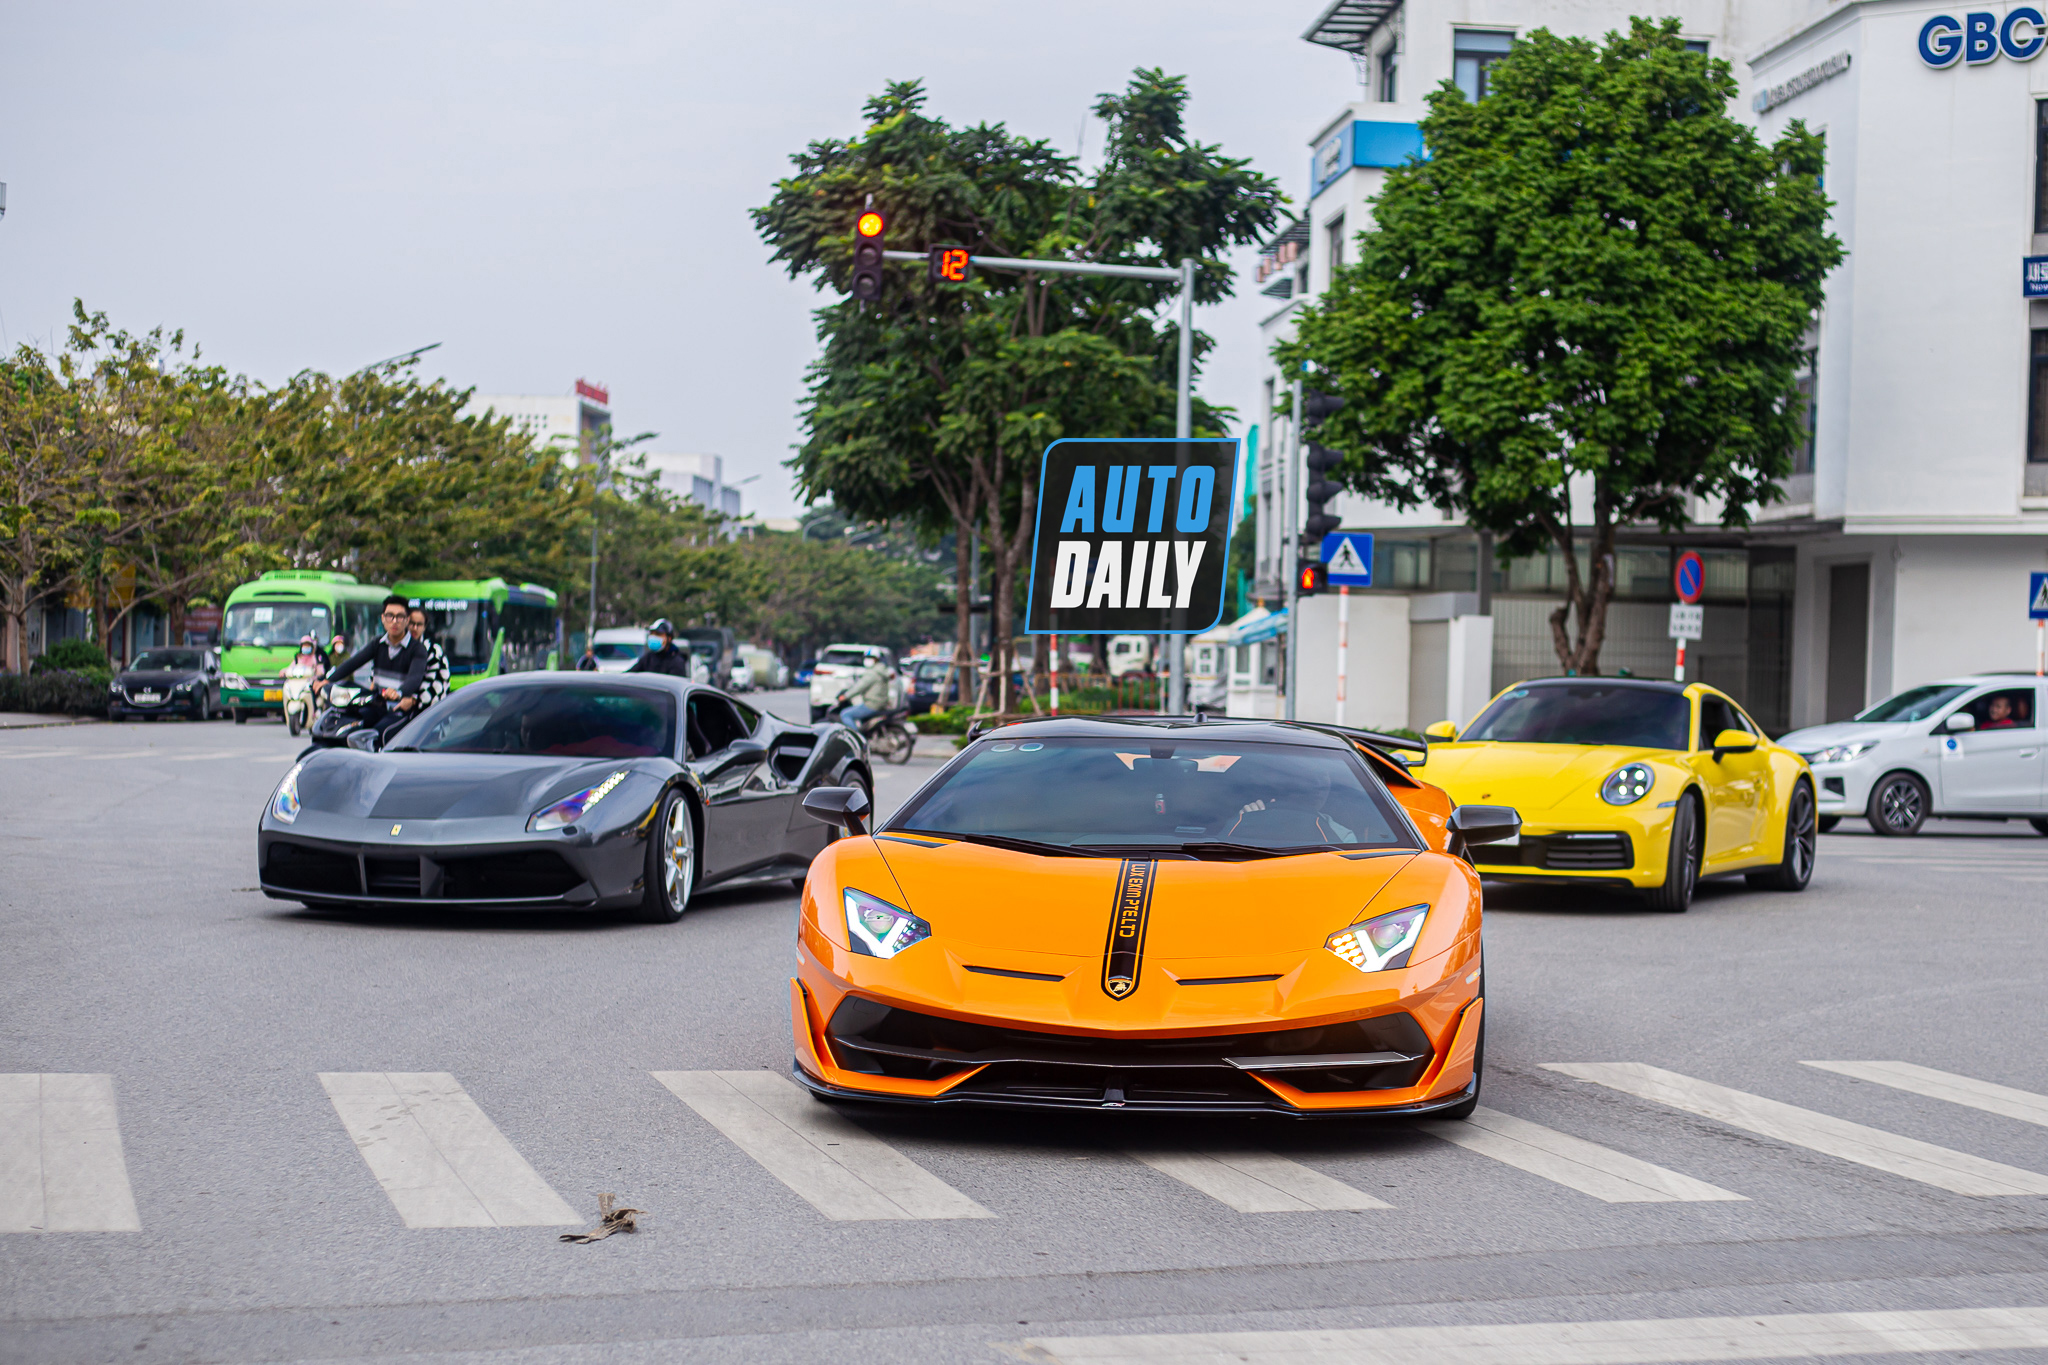 Ngắm dàn siêu xe, xe sang trăm tỷ náo loạn đường phố Hà Nội dịp cuối tuần dan-sieu-xe-tram-ty-ha-noi-autodaily-3.JPG